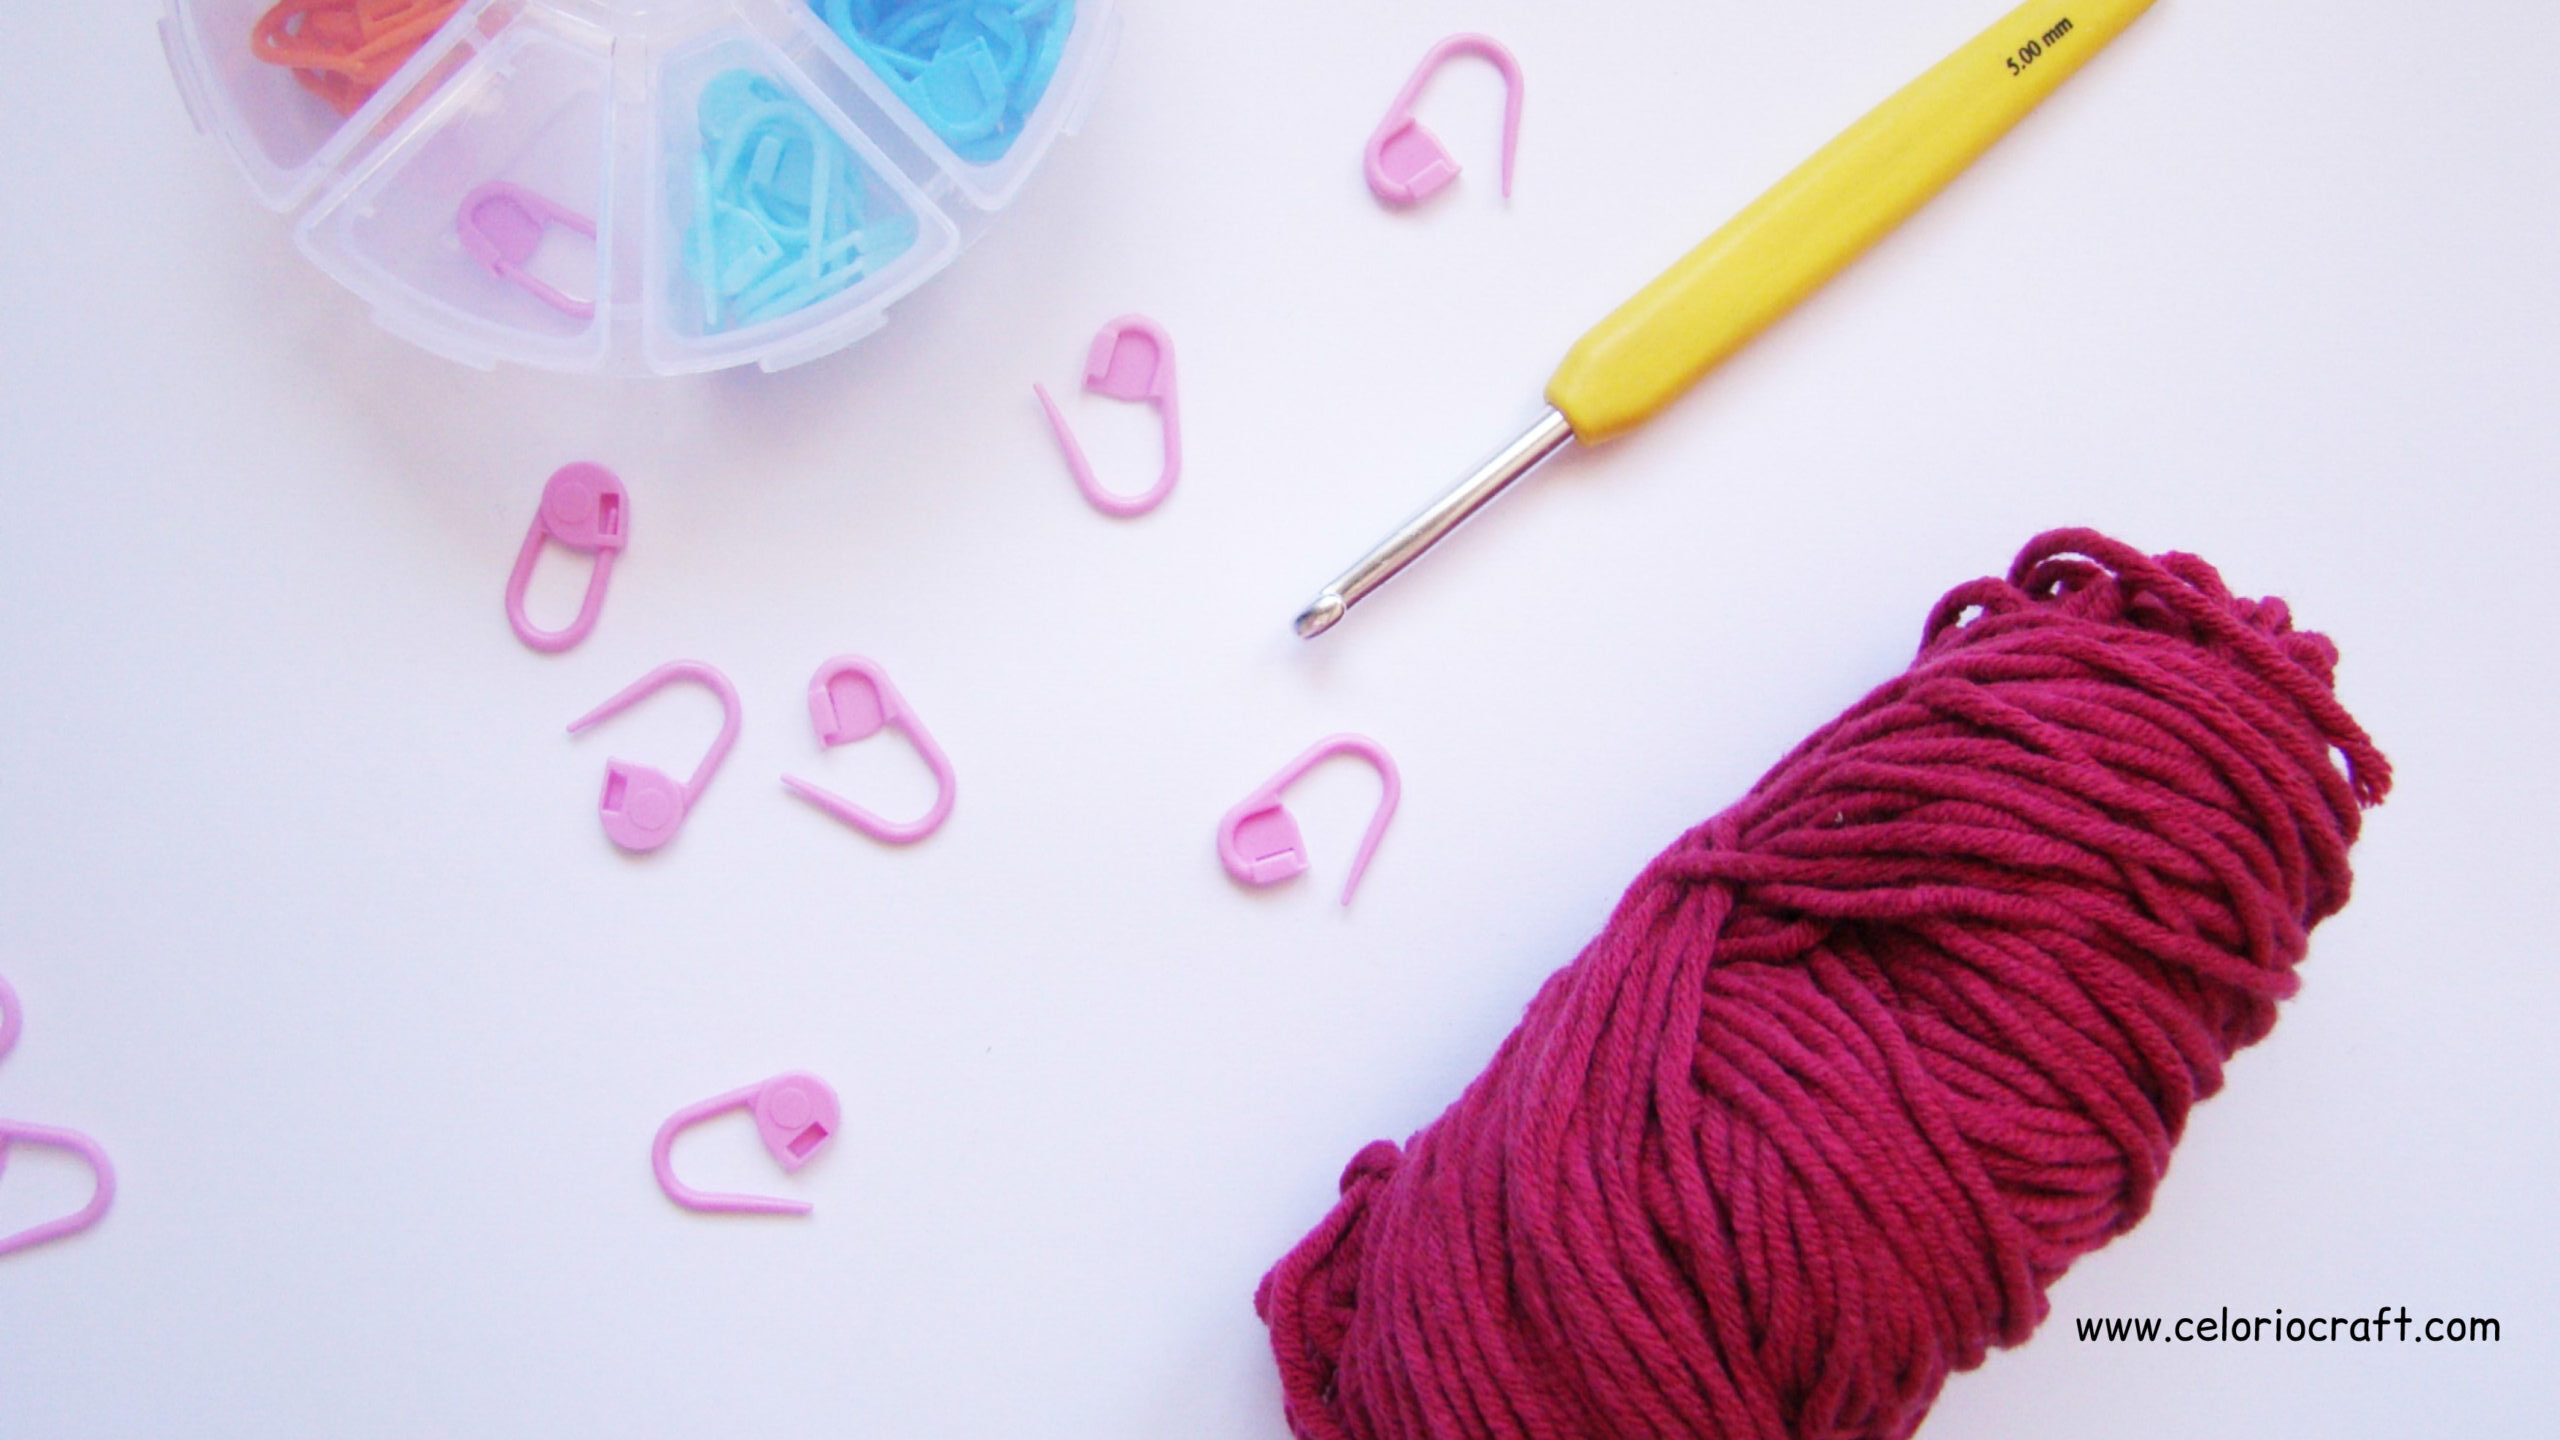 8 Usos que puedes darle a tus Marcadores de Puntos en Crochet y que no sabías.